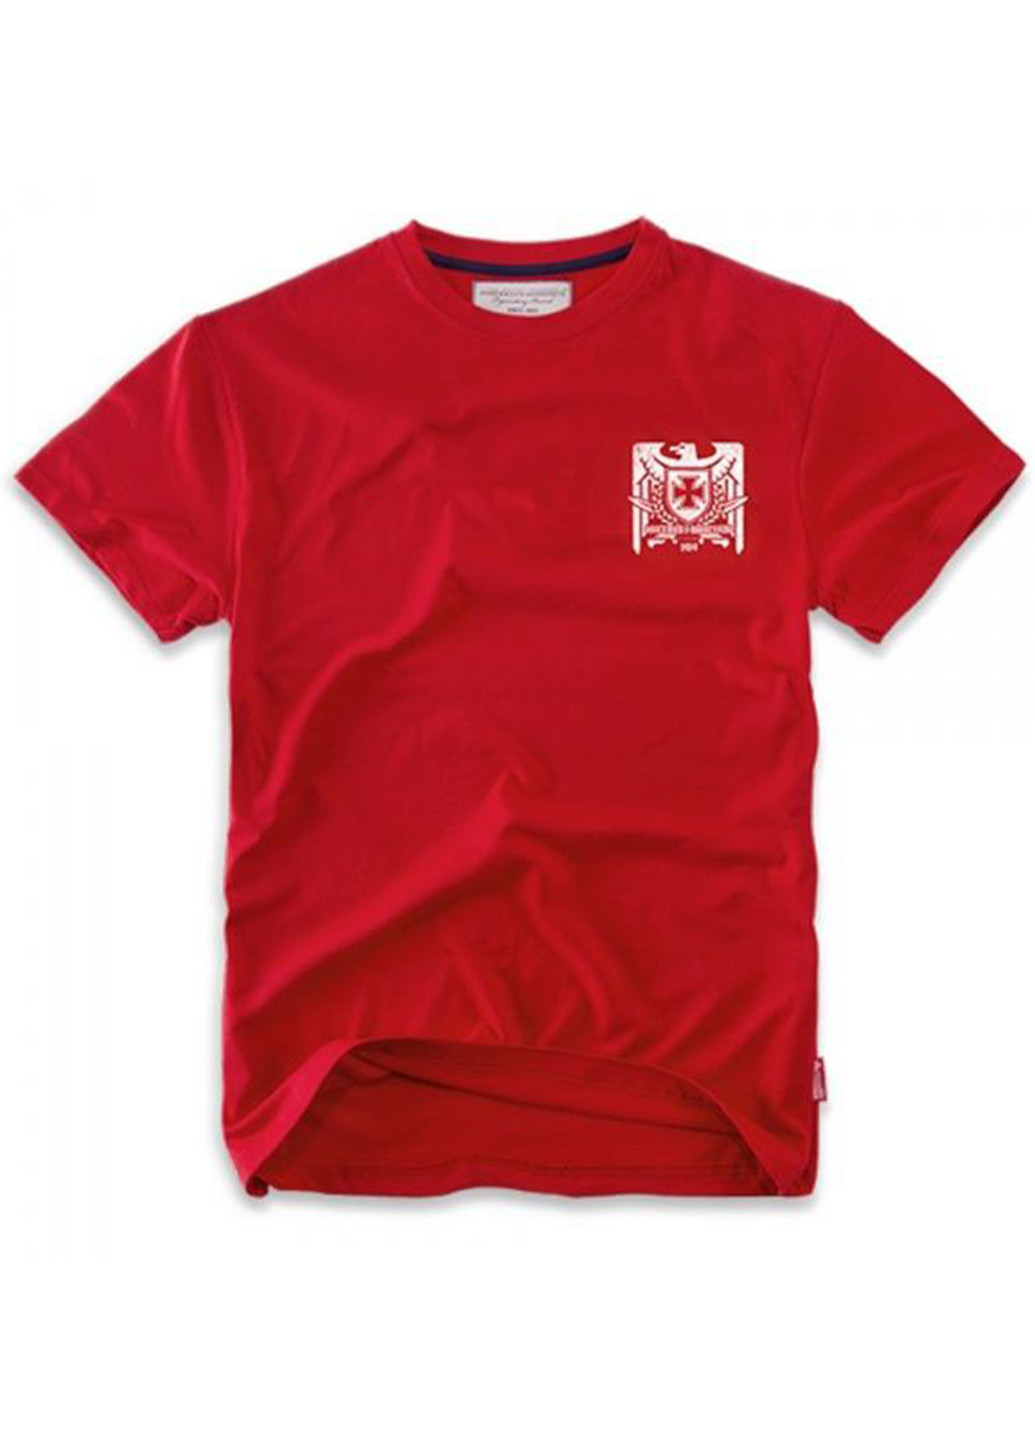 Красная футболка dobermans nord storm ts53rd Dobermans Aggressive